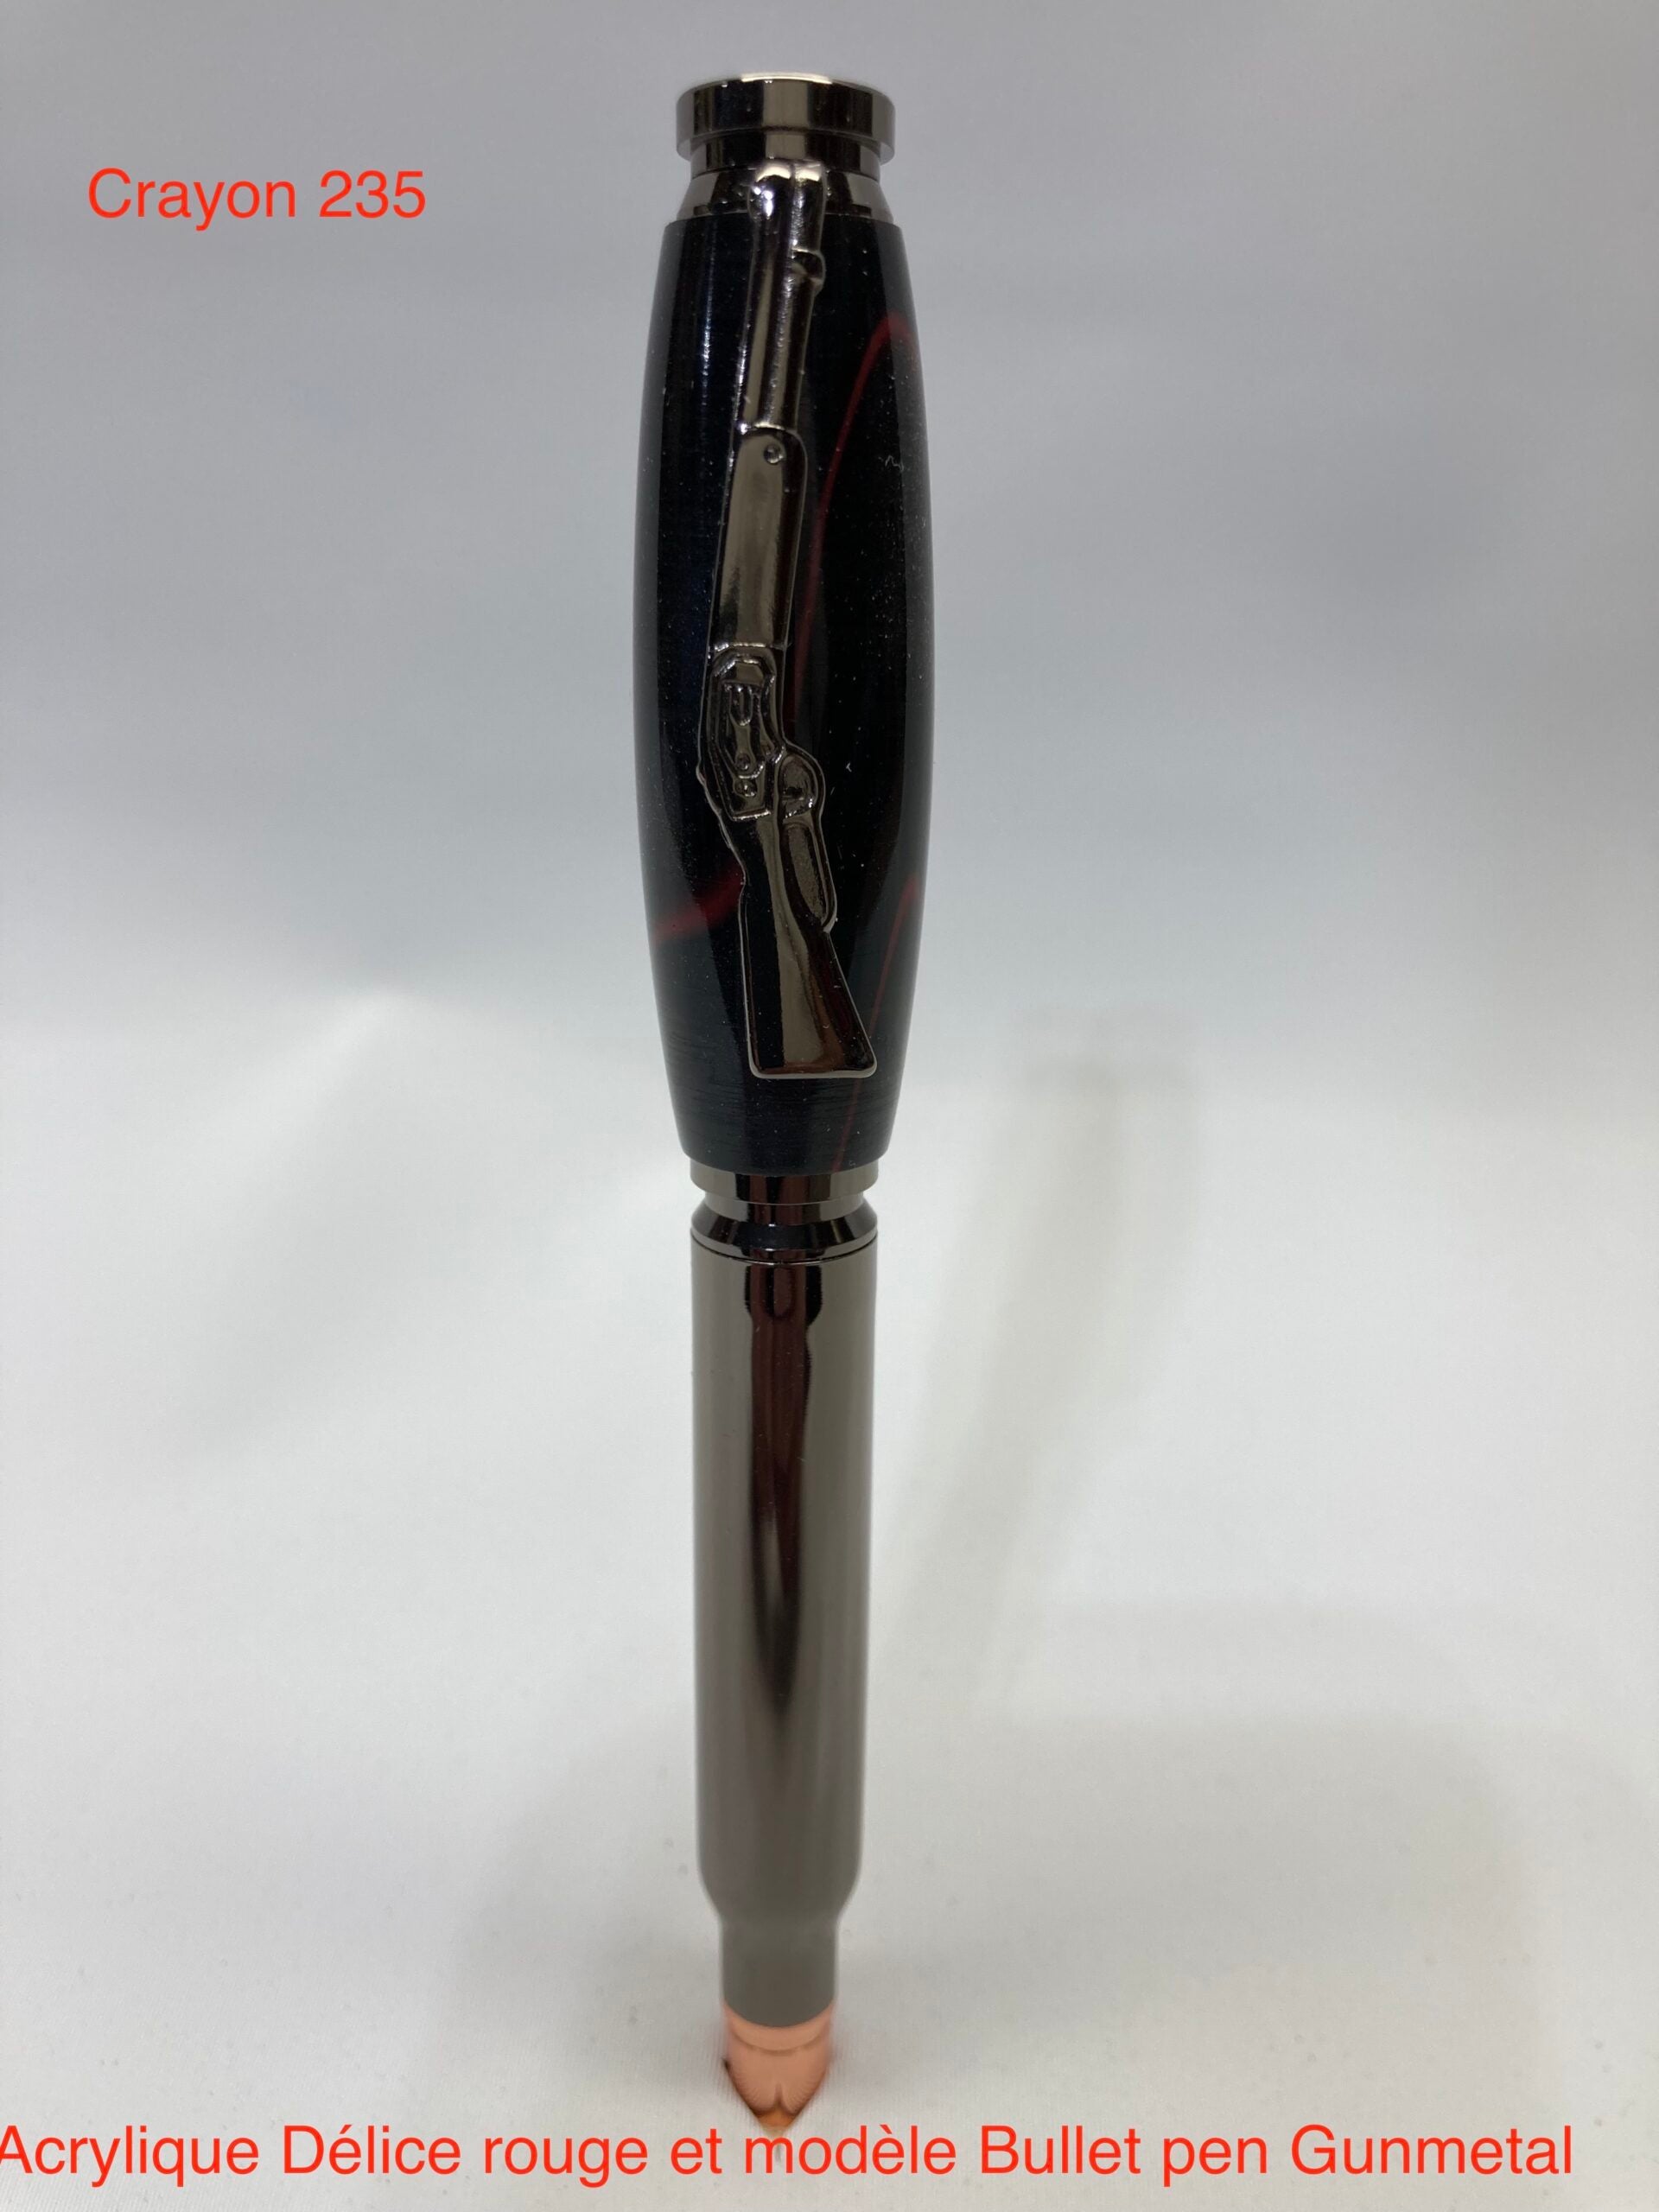 Chasse carthridge bullet, acrylique délice modèle bullet pen gun métal